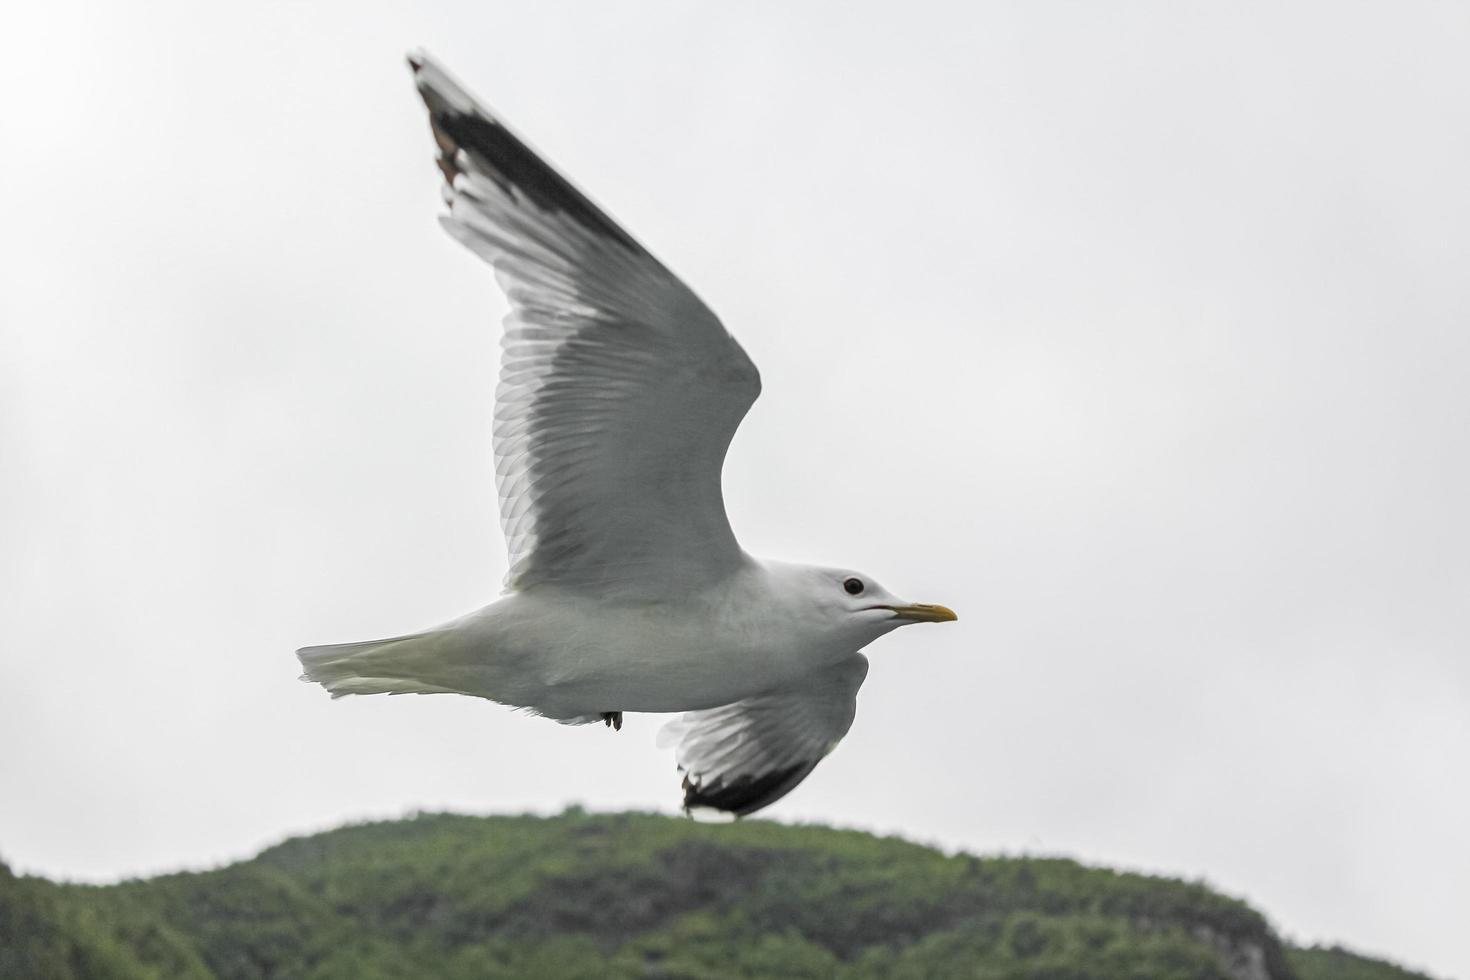 gaivotas voam pela bela paisagem do fiorde montanhoso na noruega. foto